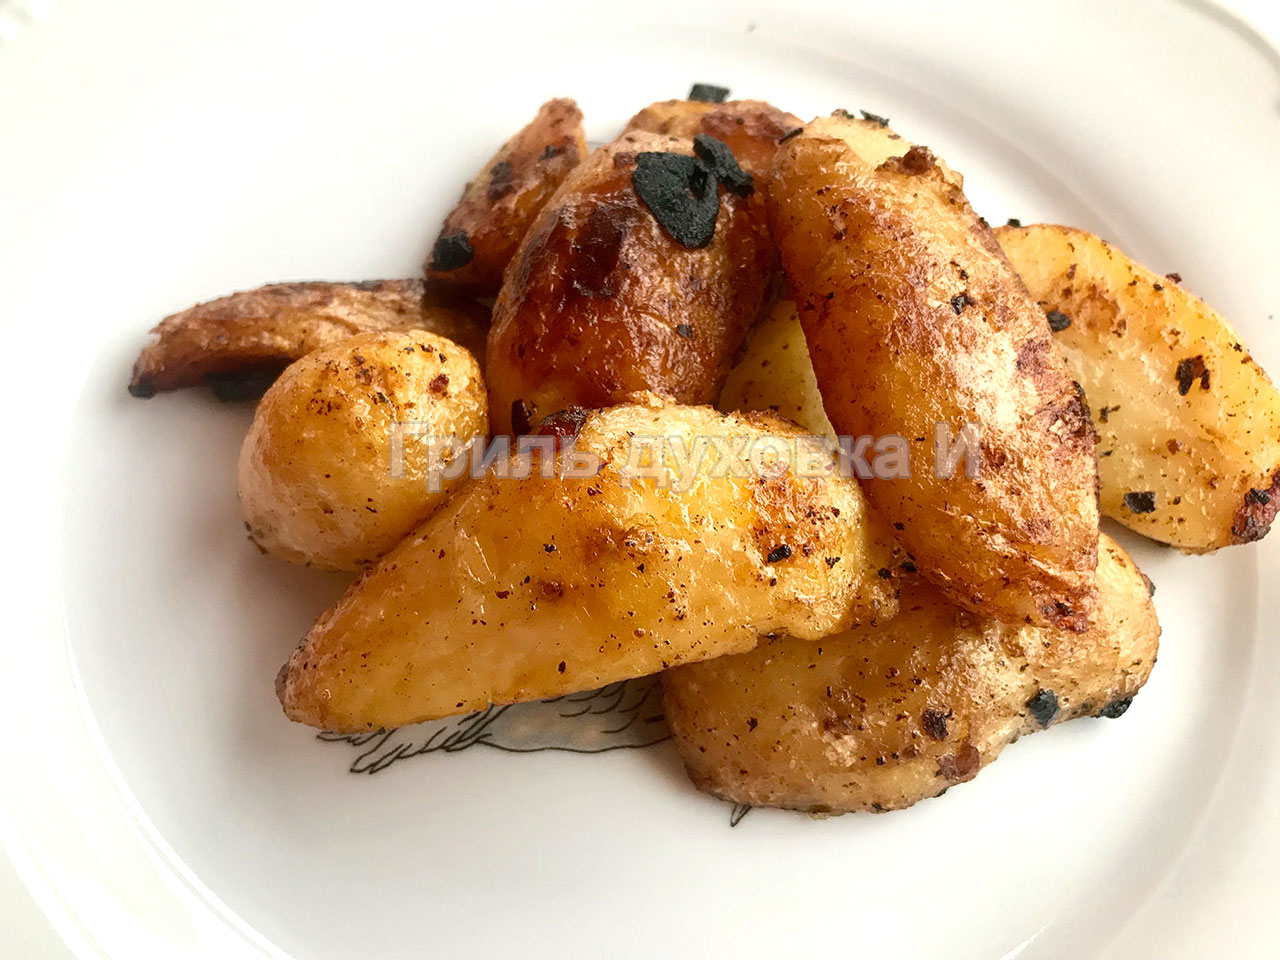 Жареная молодая картошка — рецепт с фото пошагово. Как жарить молодой картофель?